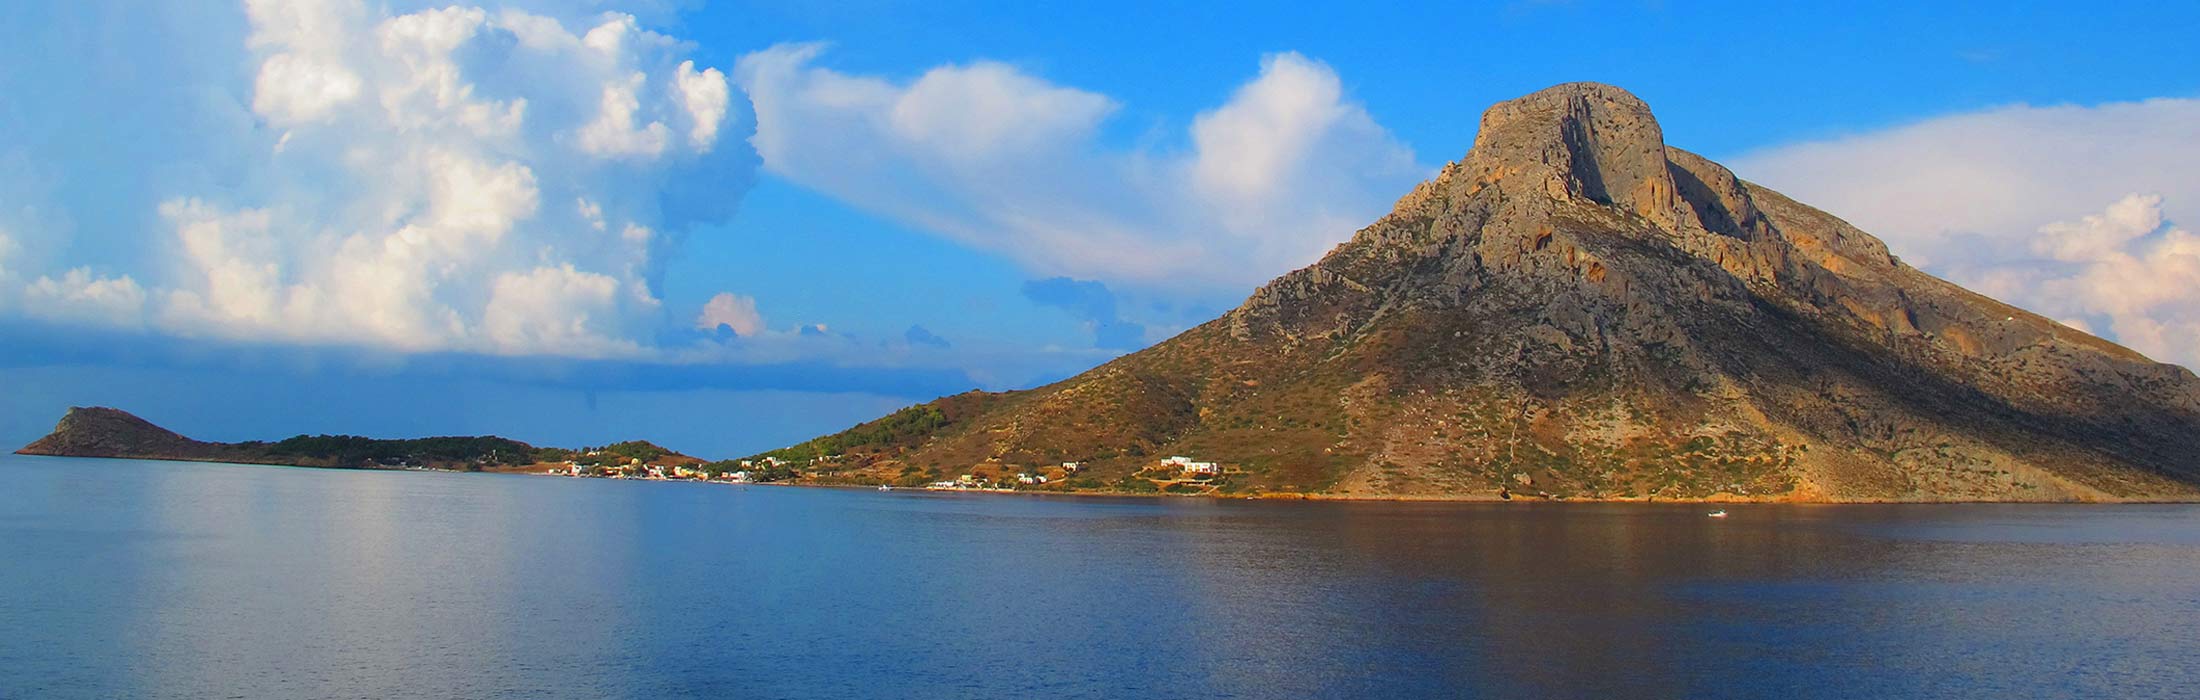 top yacht charter destinations mediterranean greece dodecanese north aegean islands kalymnos main slider 1